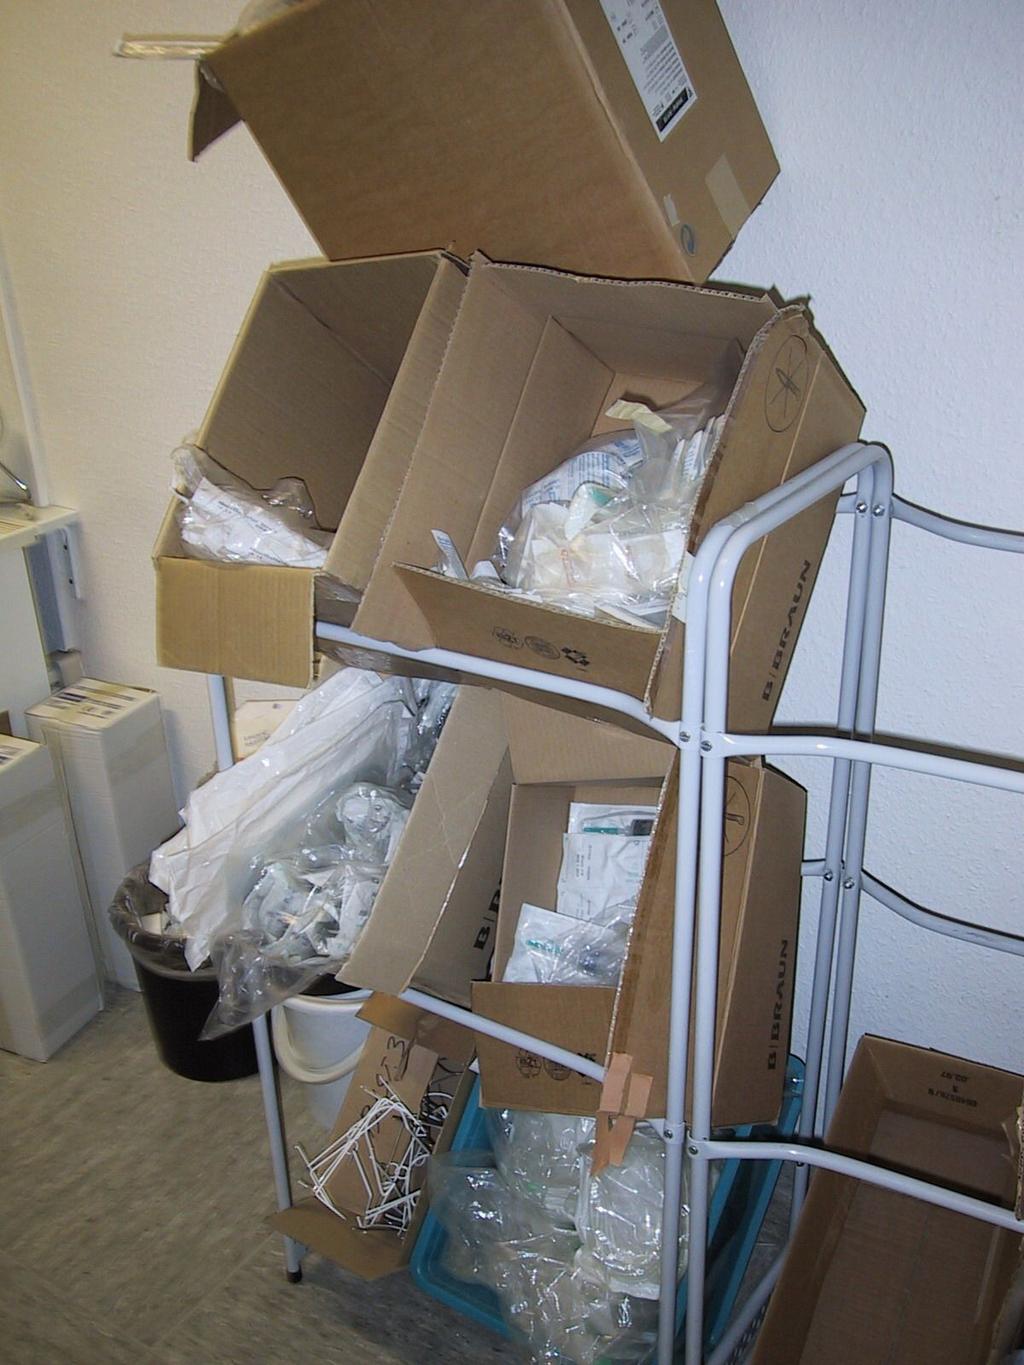 Das Bild wurde aufgenommen auf einer Intensivstation. Ihre Meinung? In den Kartons befinden sich steril verpackte Infusionsbestecke.